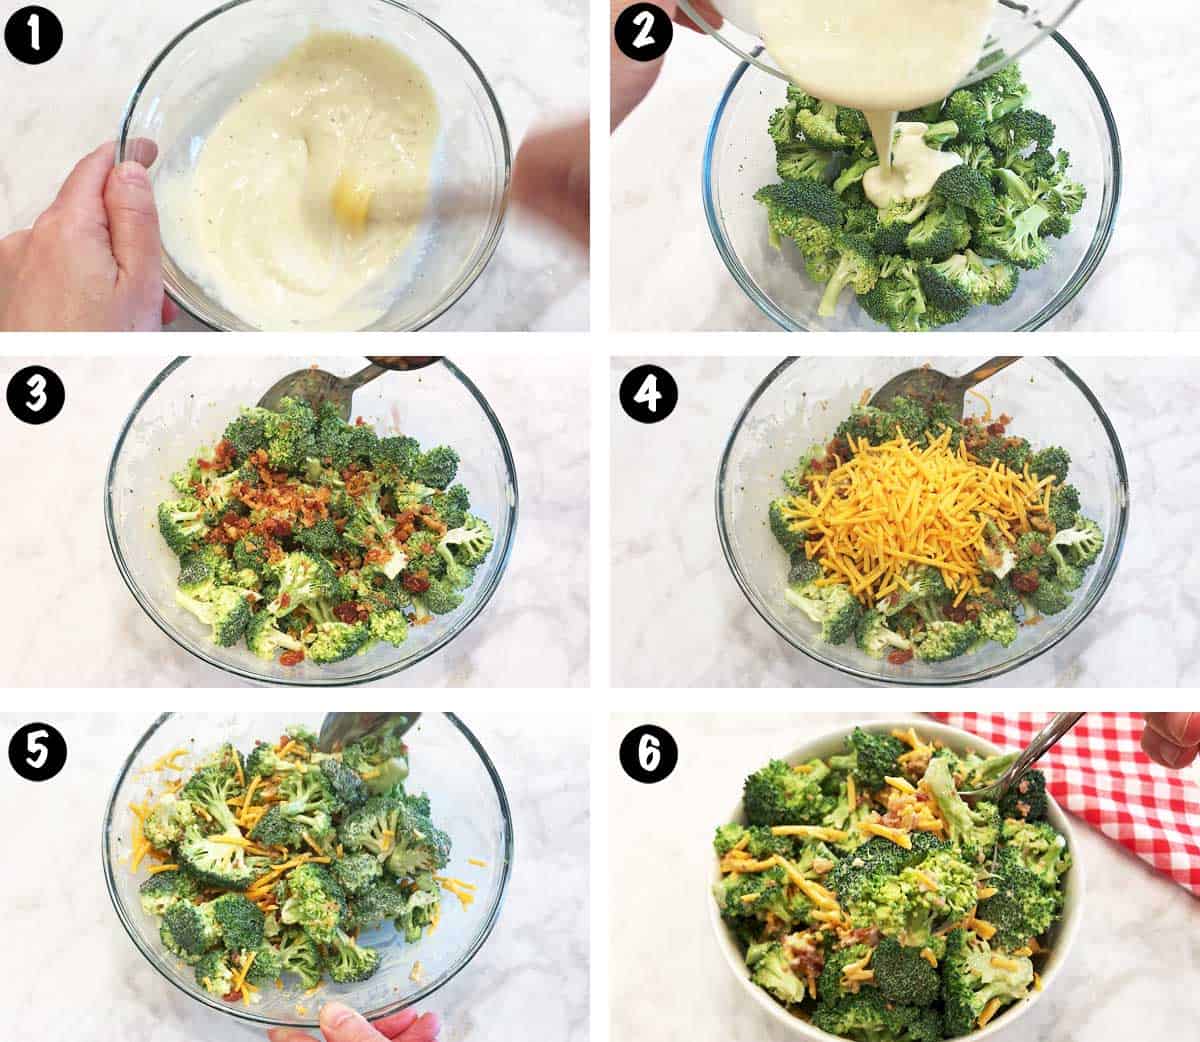 Un collage de fotos que muestra los pasos para hacer una ensalada de brócoli. 